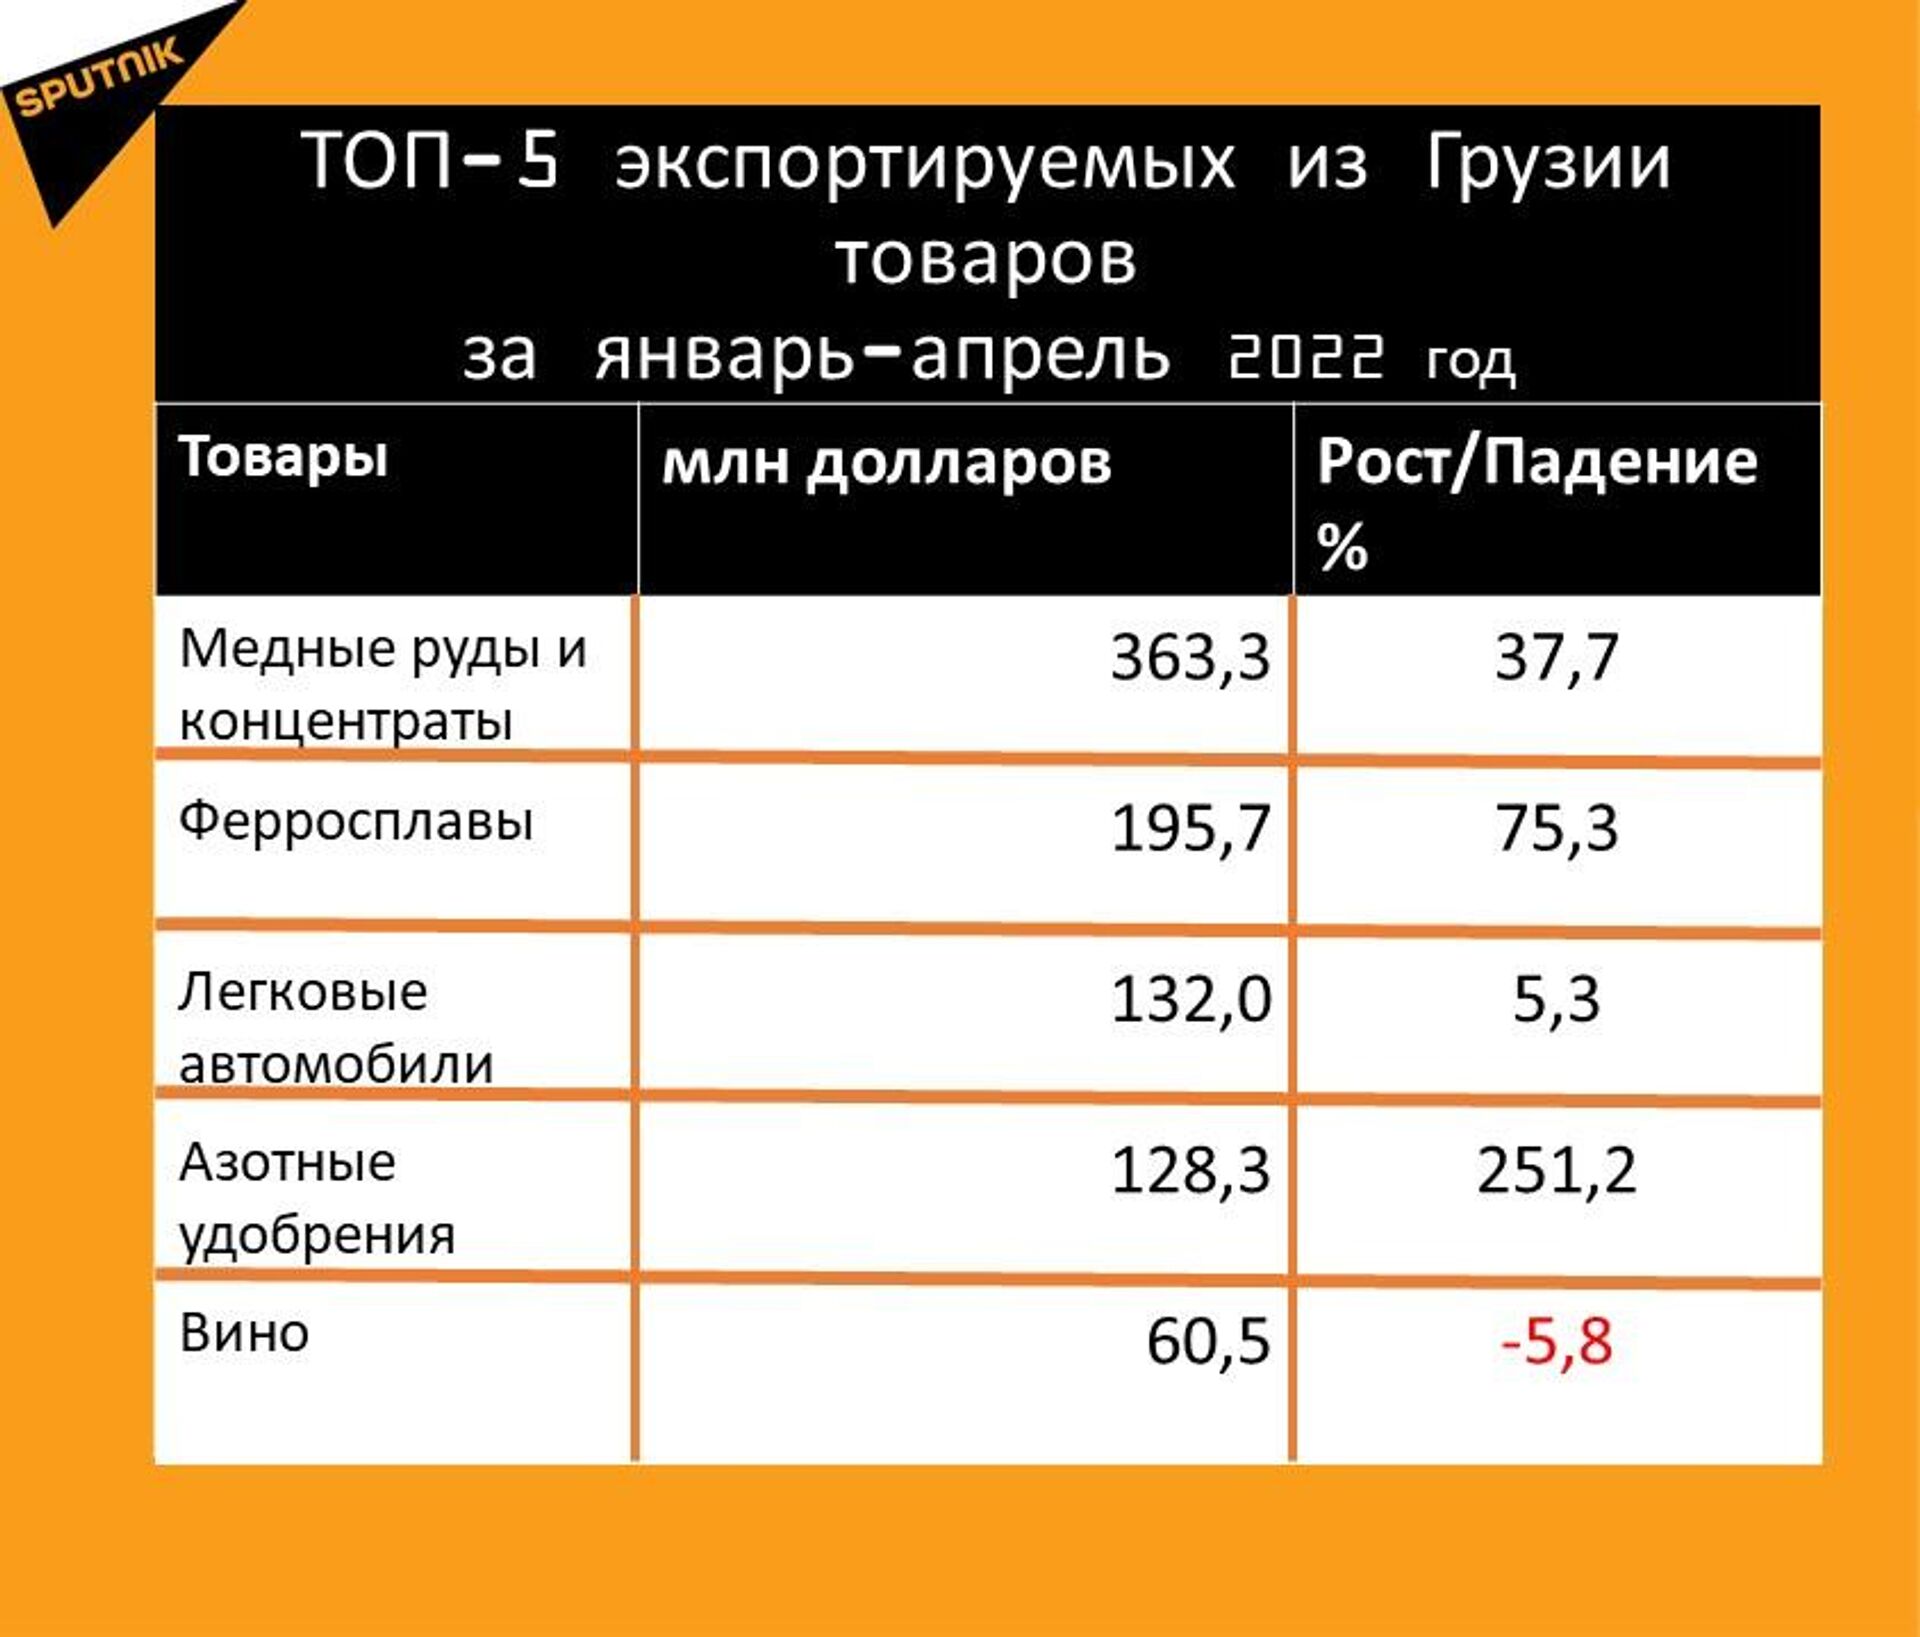 Статистика внешнеторгового оборота Грузии за январь-апрель 2022 года, экспорт - Sputnik Грузия, 1920, 20.05.2022